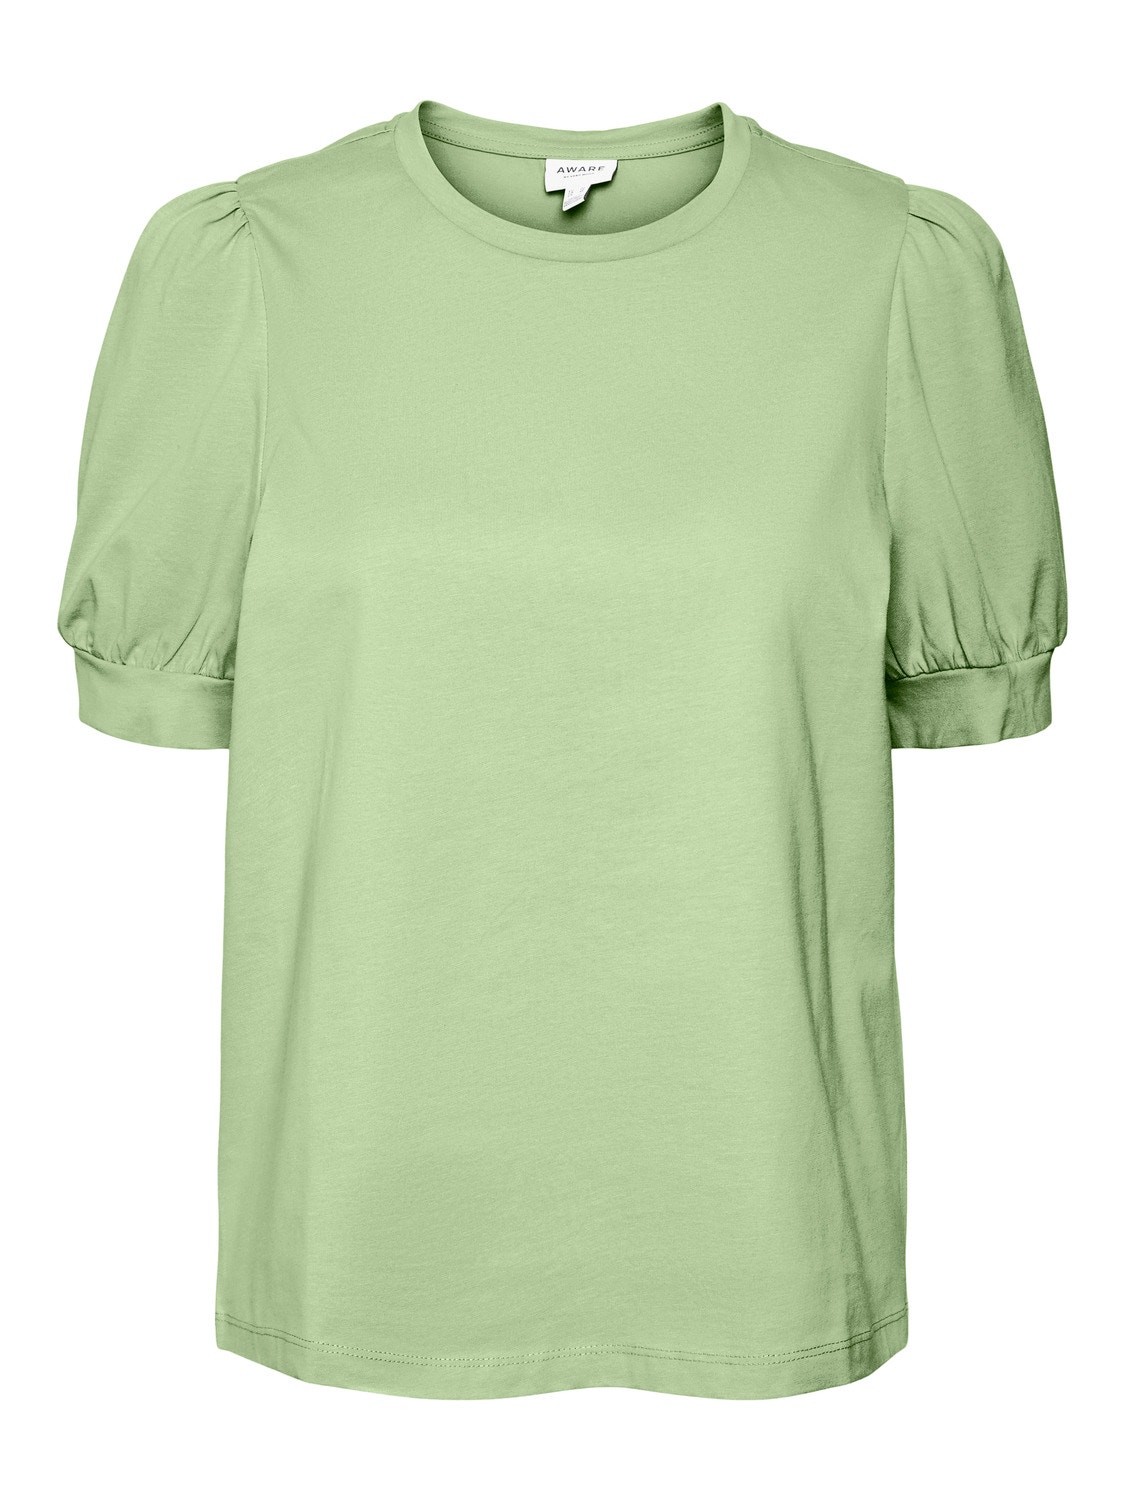 Vero Moda VMKERRY T-Shirt -Reed - 10275520